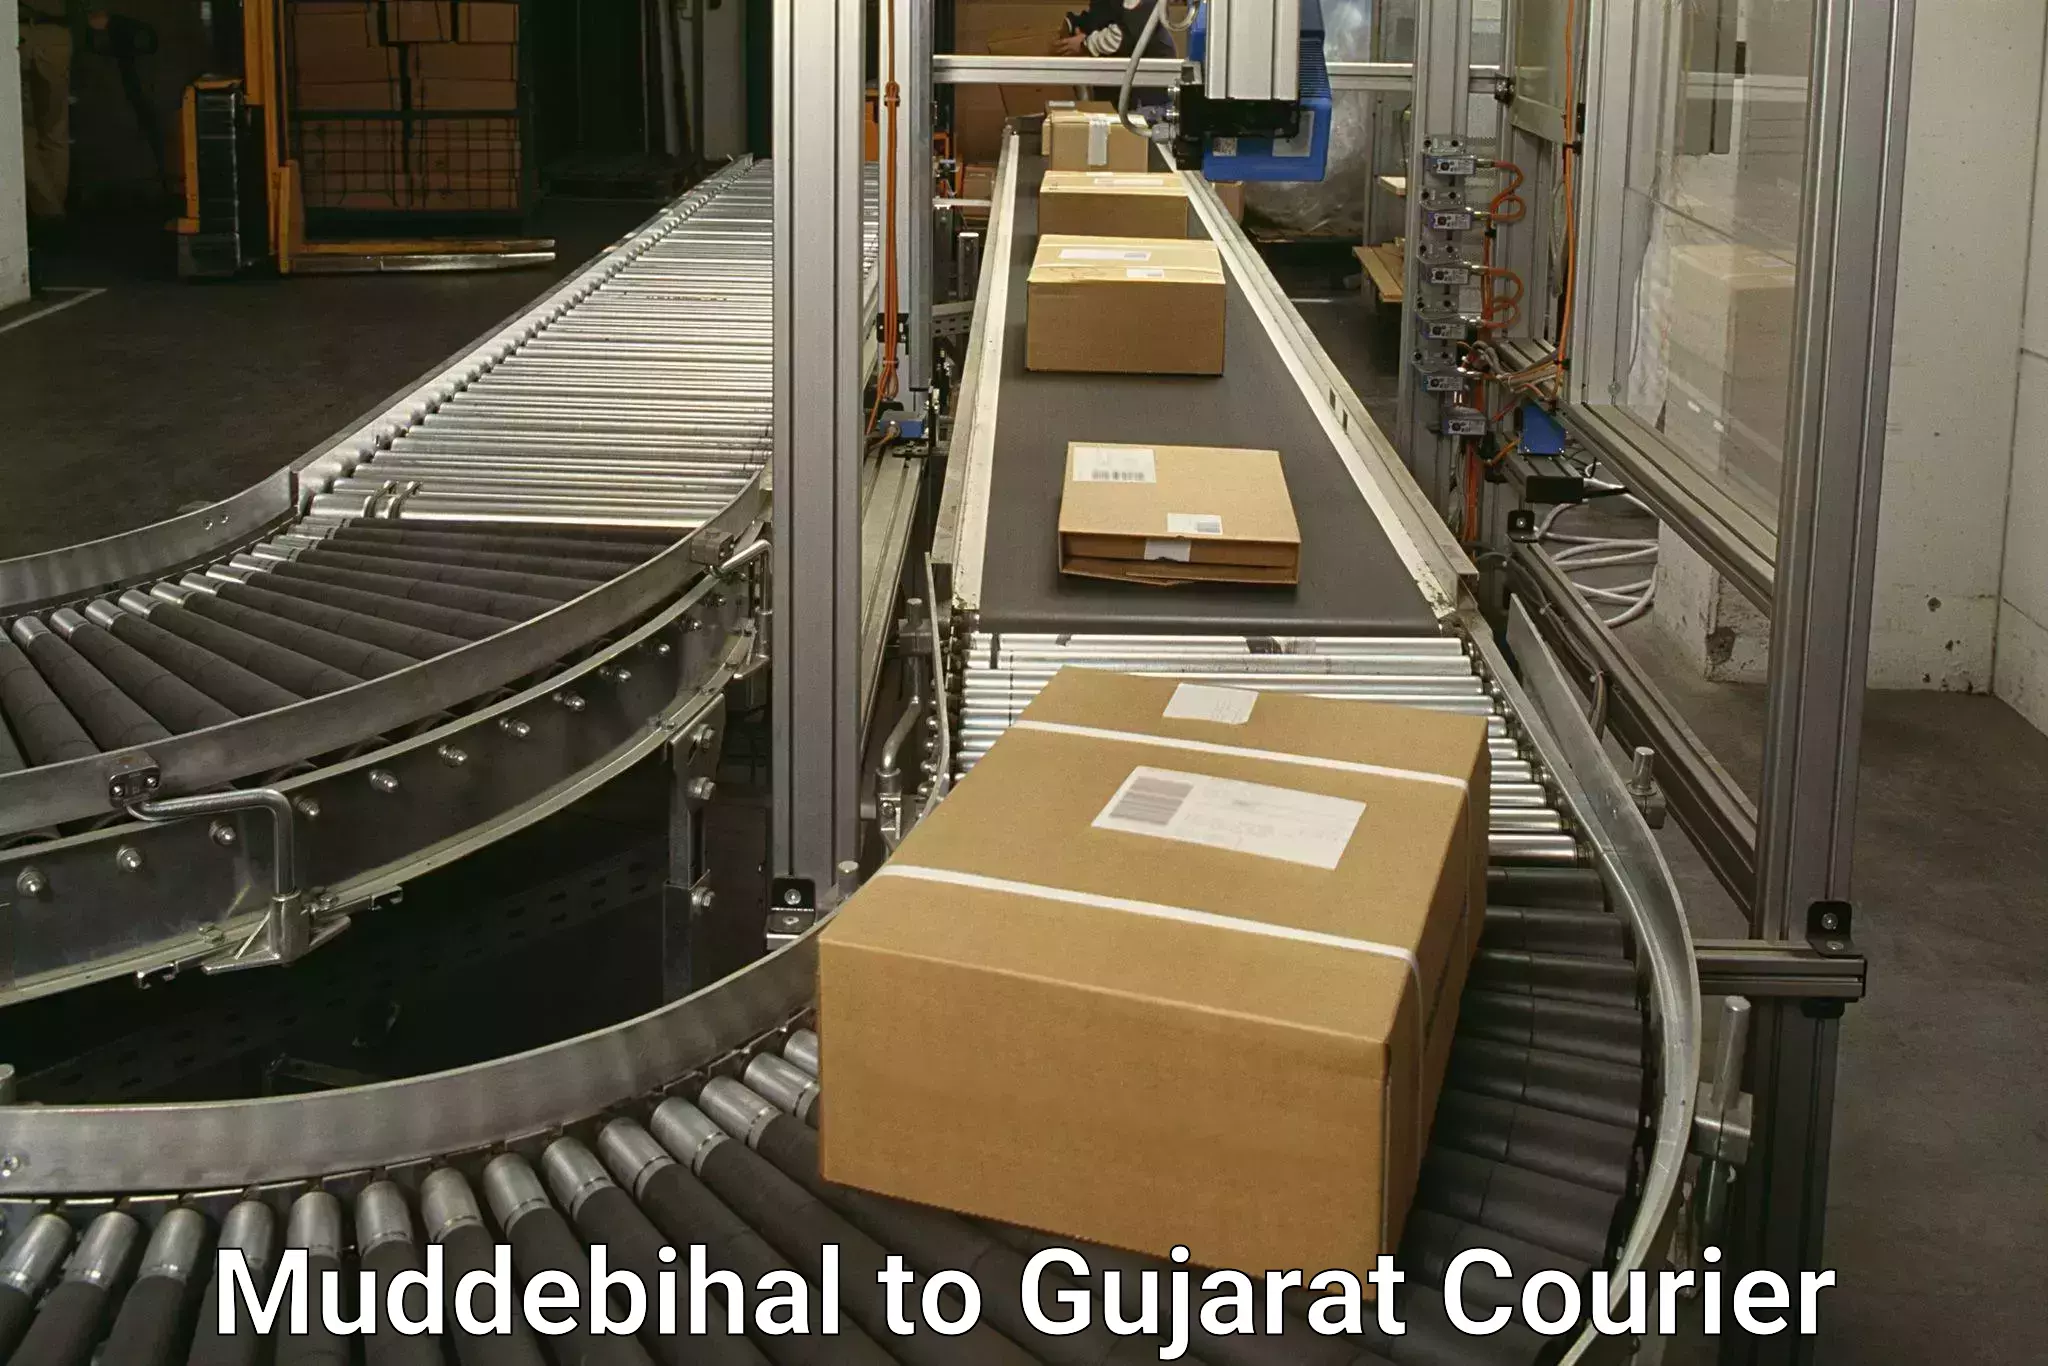 Courier service comparison Muddebihal to Rajpipla